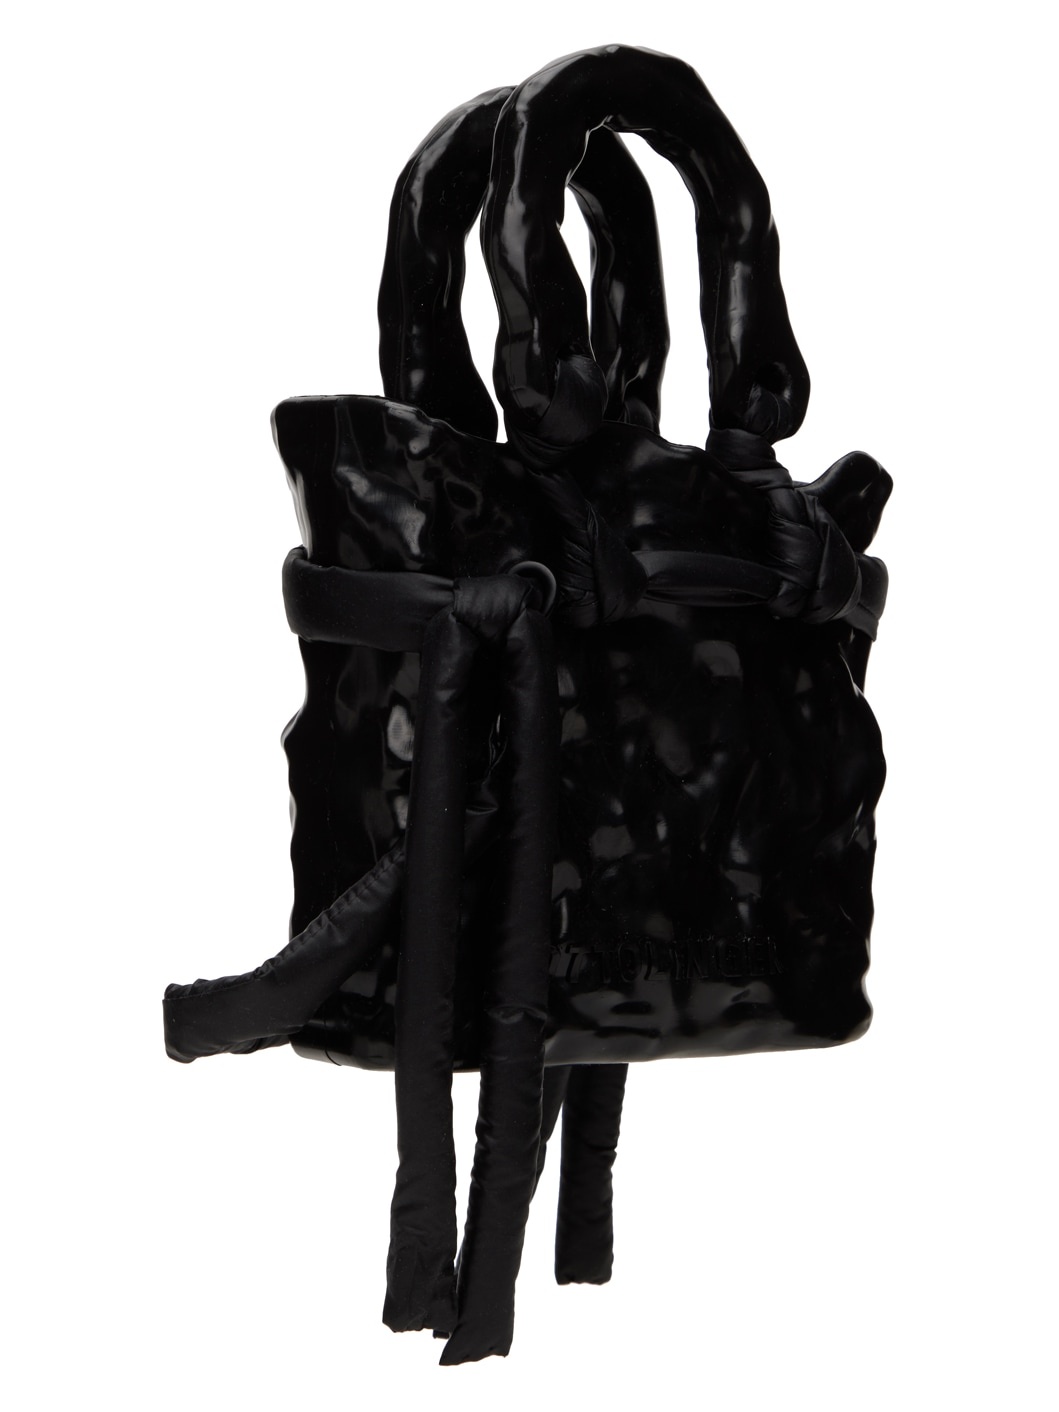 SSENSE Exclusive Black Signature Ceramic Bag - 2